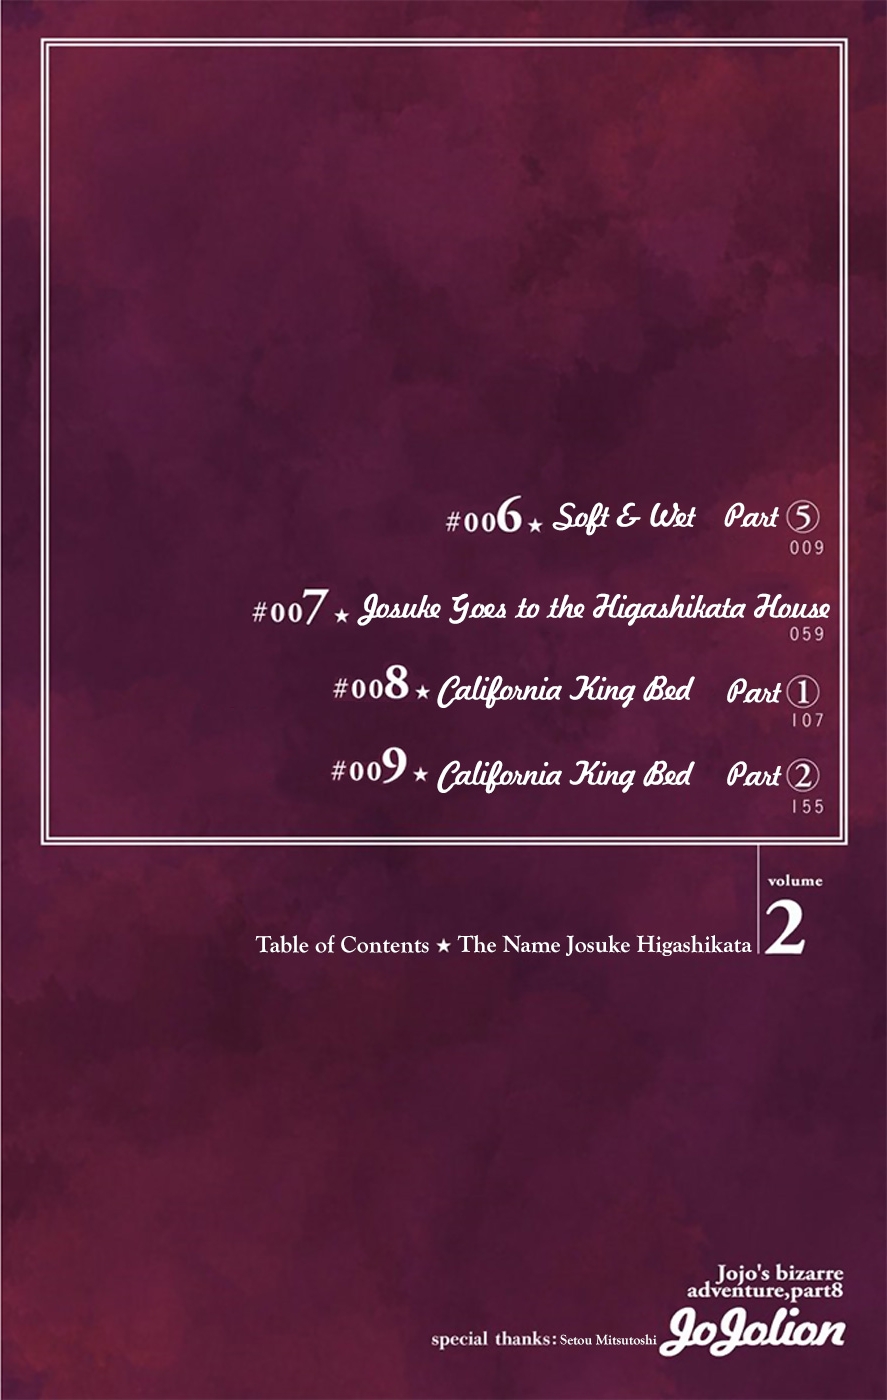 JoJo's Bizarre Adventure Part 8 JoJolion [Official Colored] Vol. 2 Ch. 6 Soft & Wet Part 5